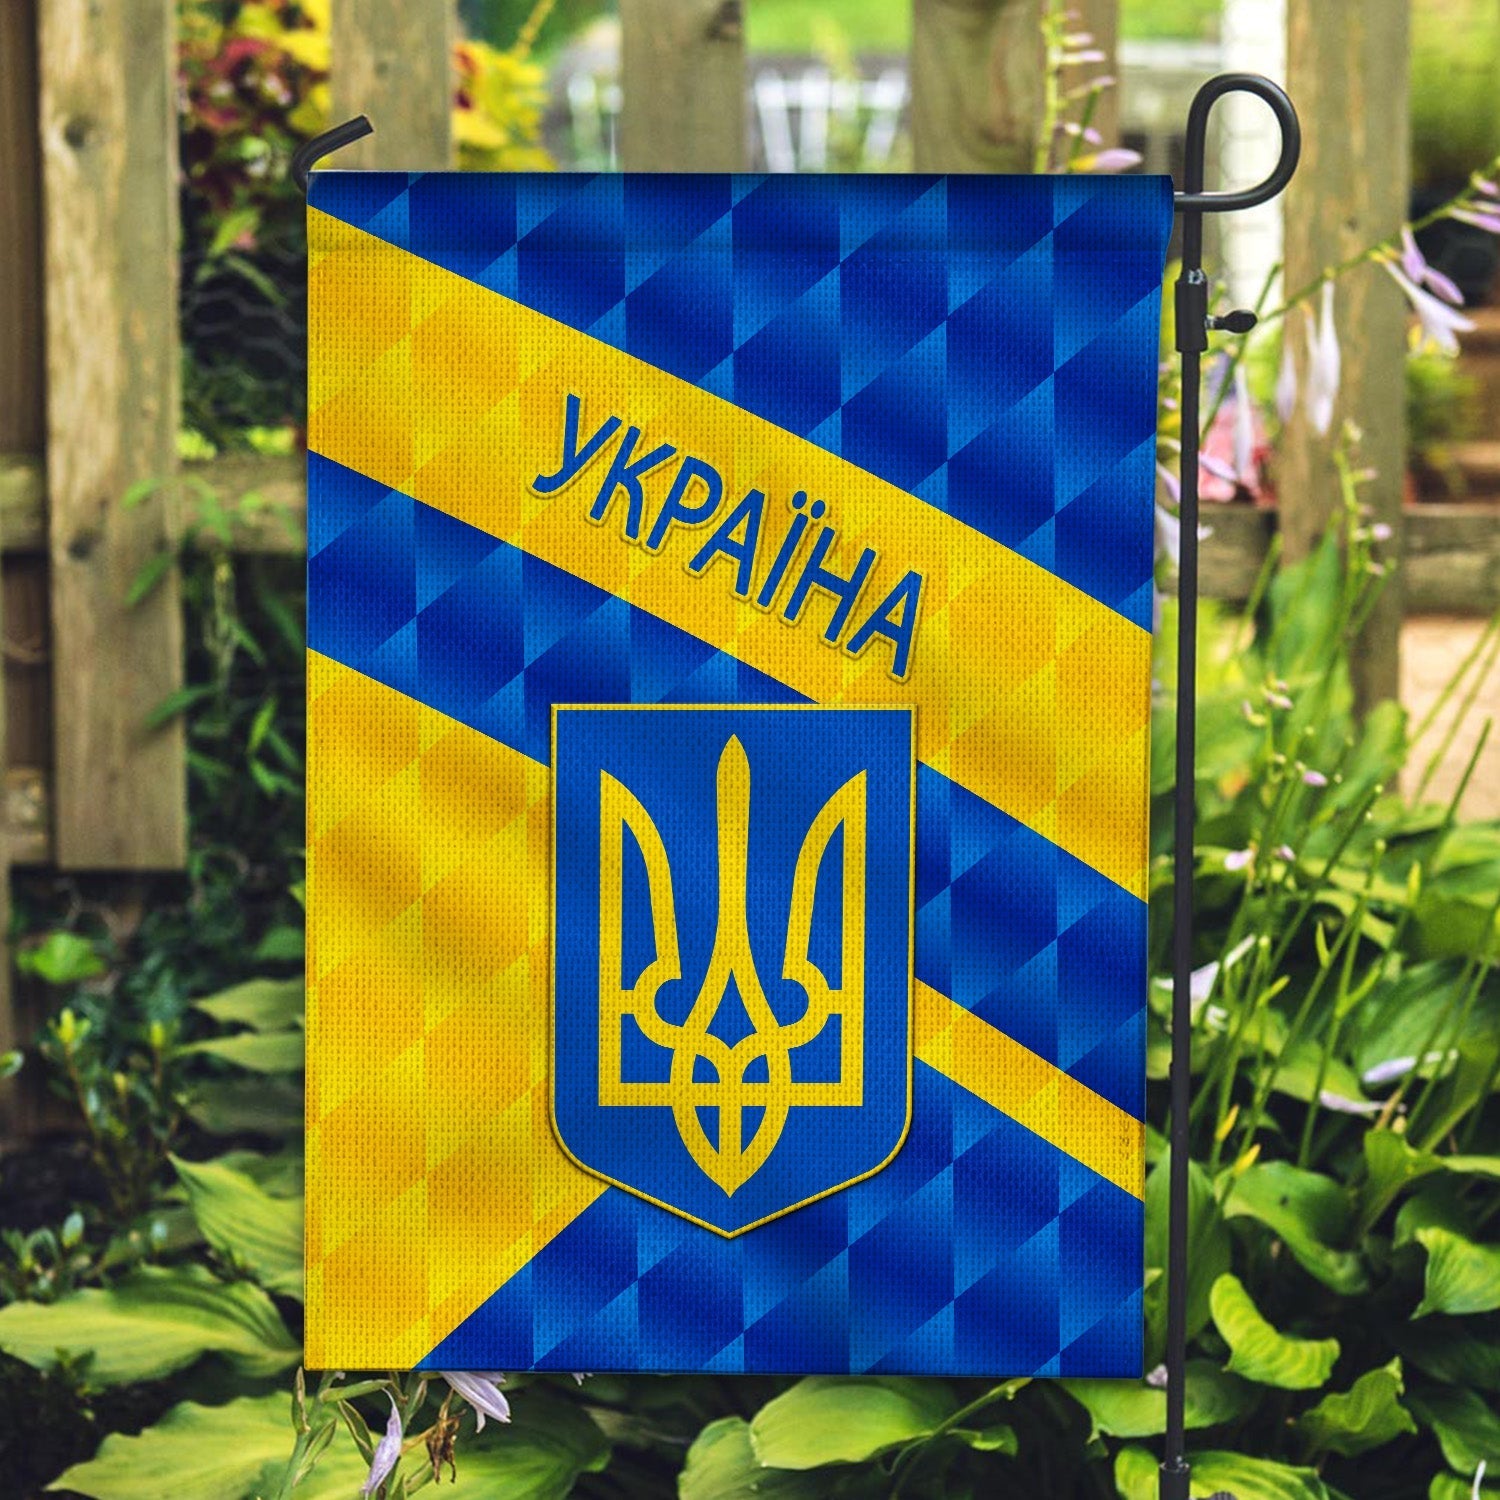 ukraine-garden-flag-and-house-flag-sporty-style